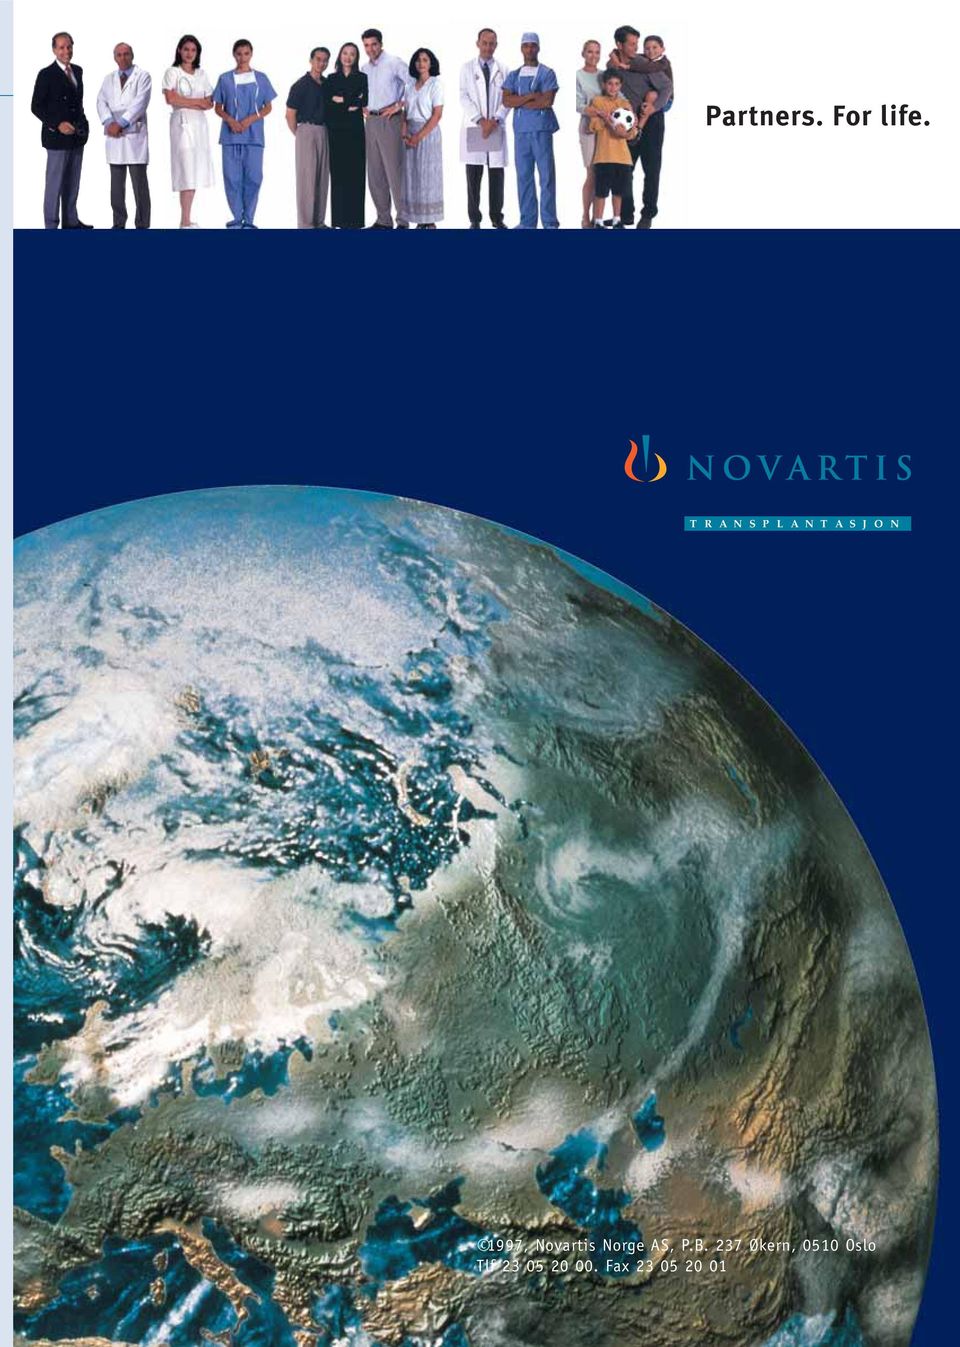 1997, Novartis Norge AS, P.B.